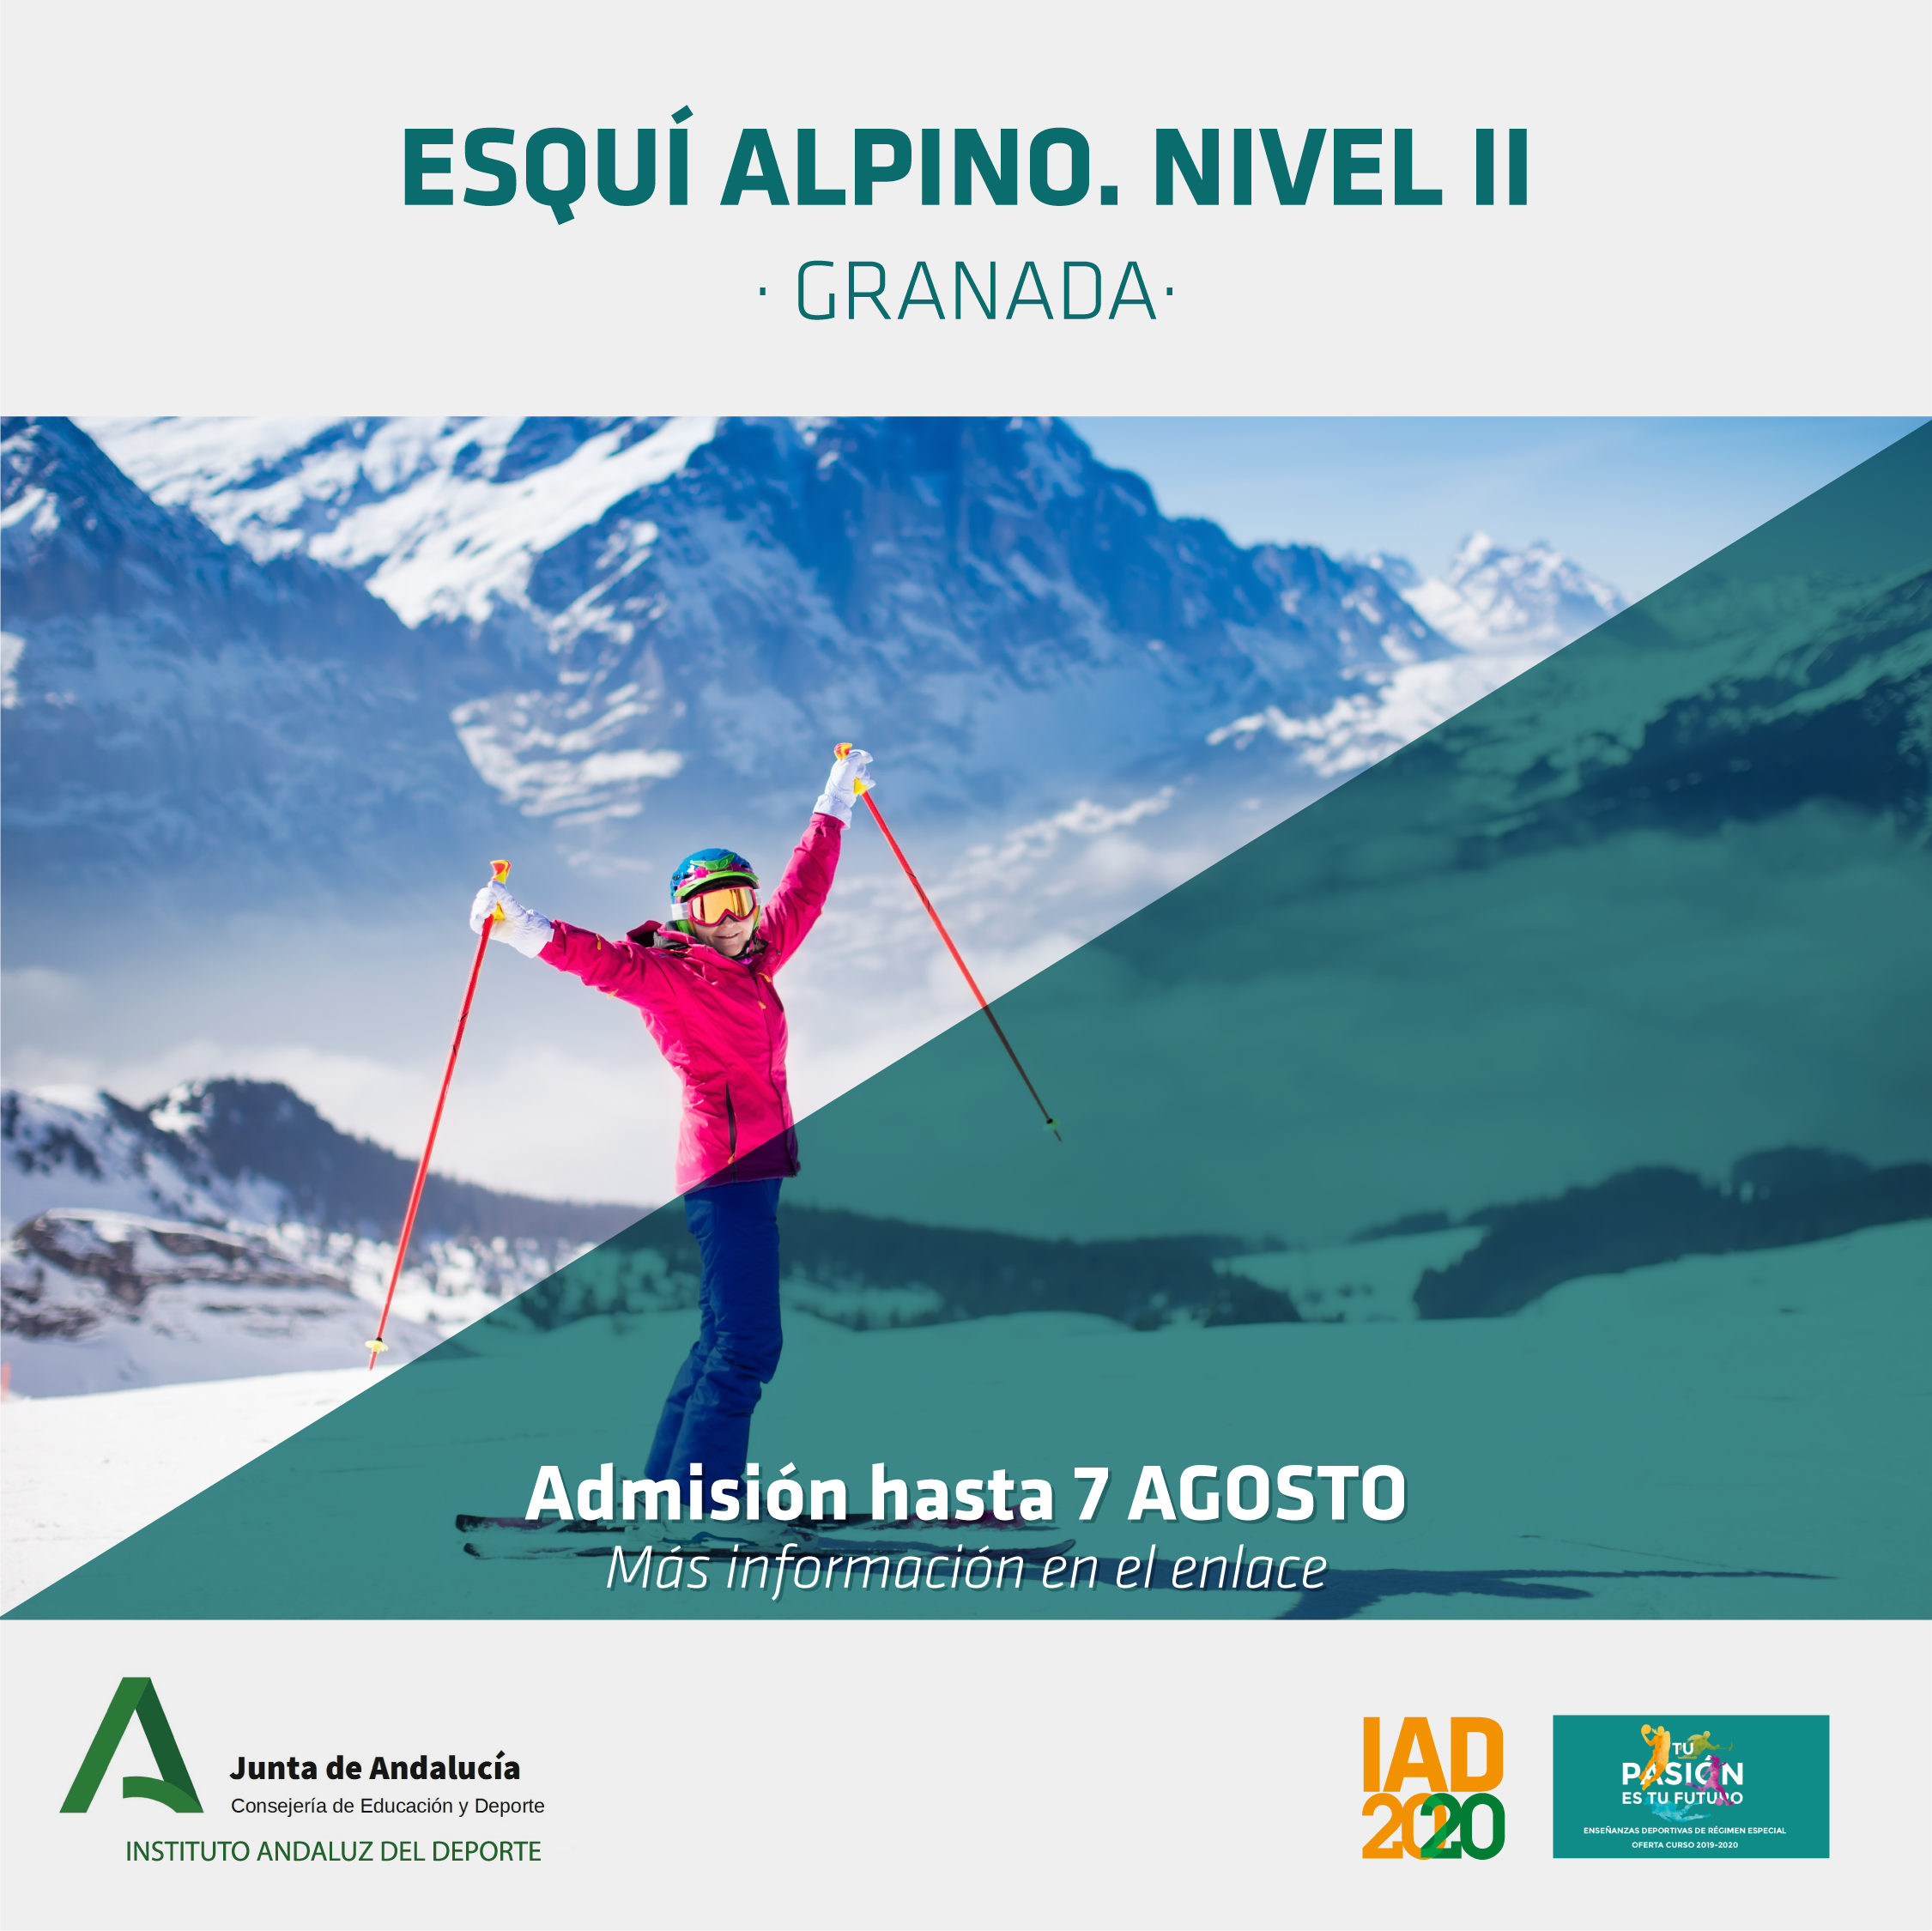 Continúa tu formación en Esquí Alpino con el Curso de Técnico Deportivo Nivel II